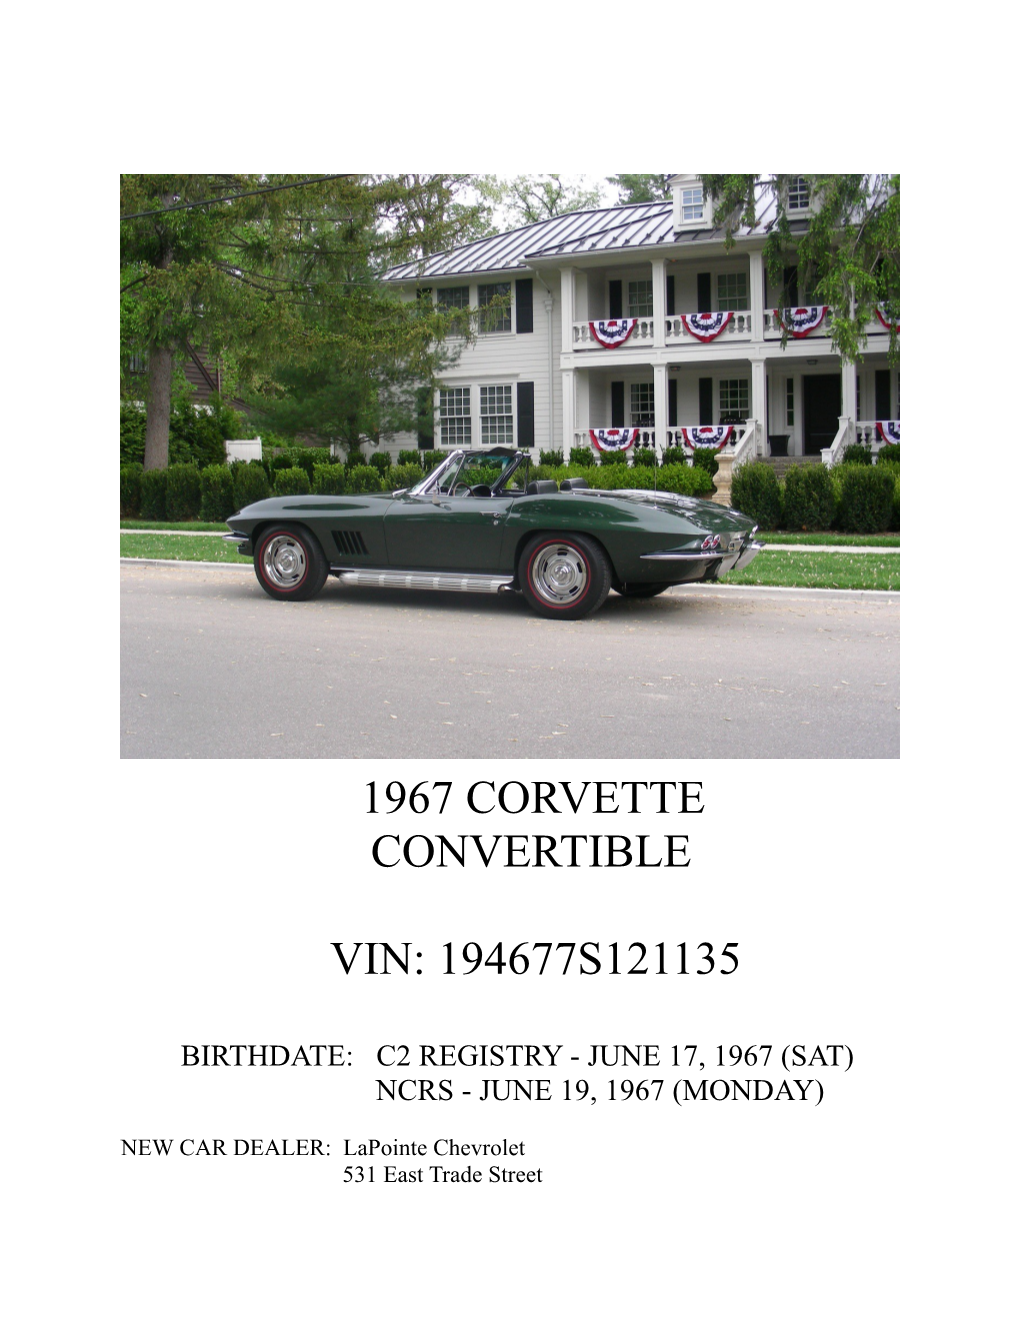 Birthdate: C2 Registry - June 17, 1967 (Sat)